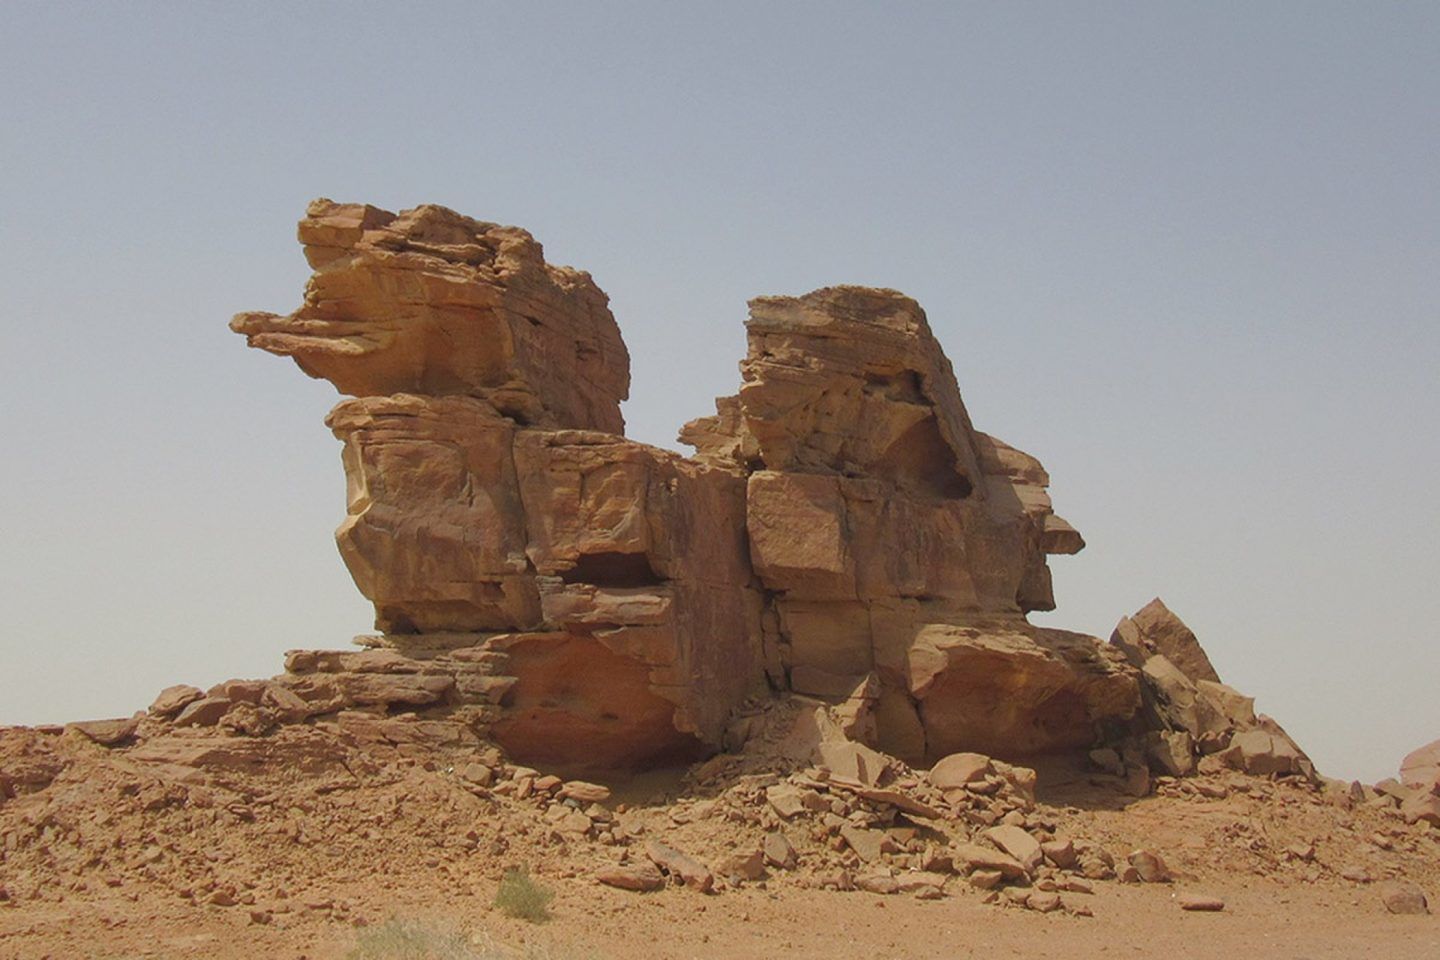 من قام بنحت هذه الصخور الغريبة في صحراء السعودية؟